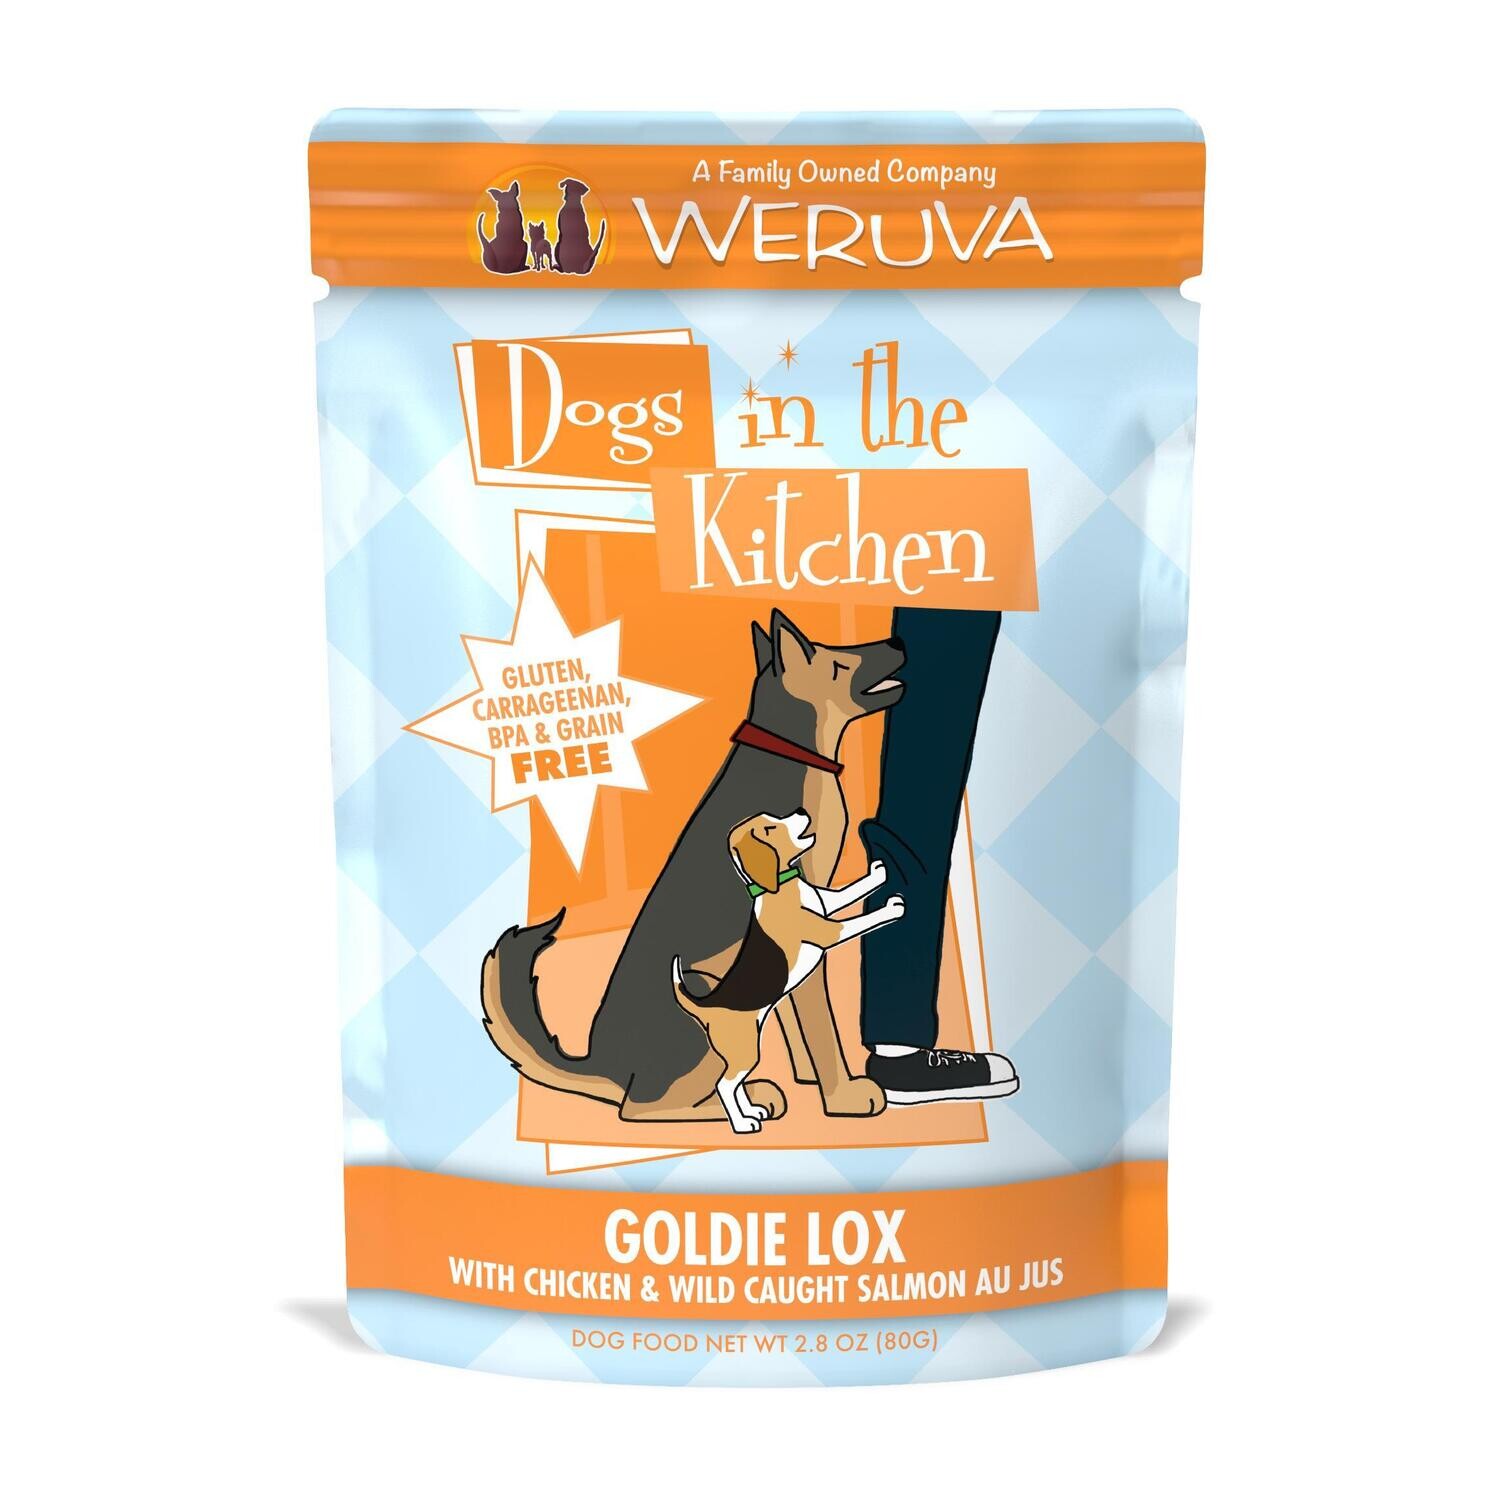 Weruva Dogs in the Kitchen Goldie Lox pouch 12/case